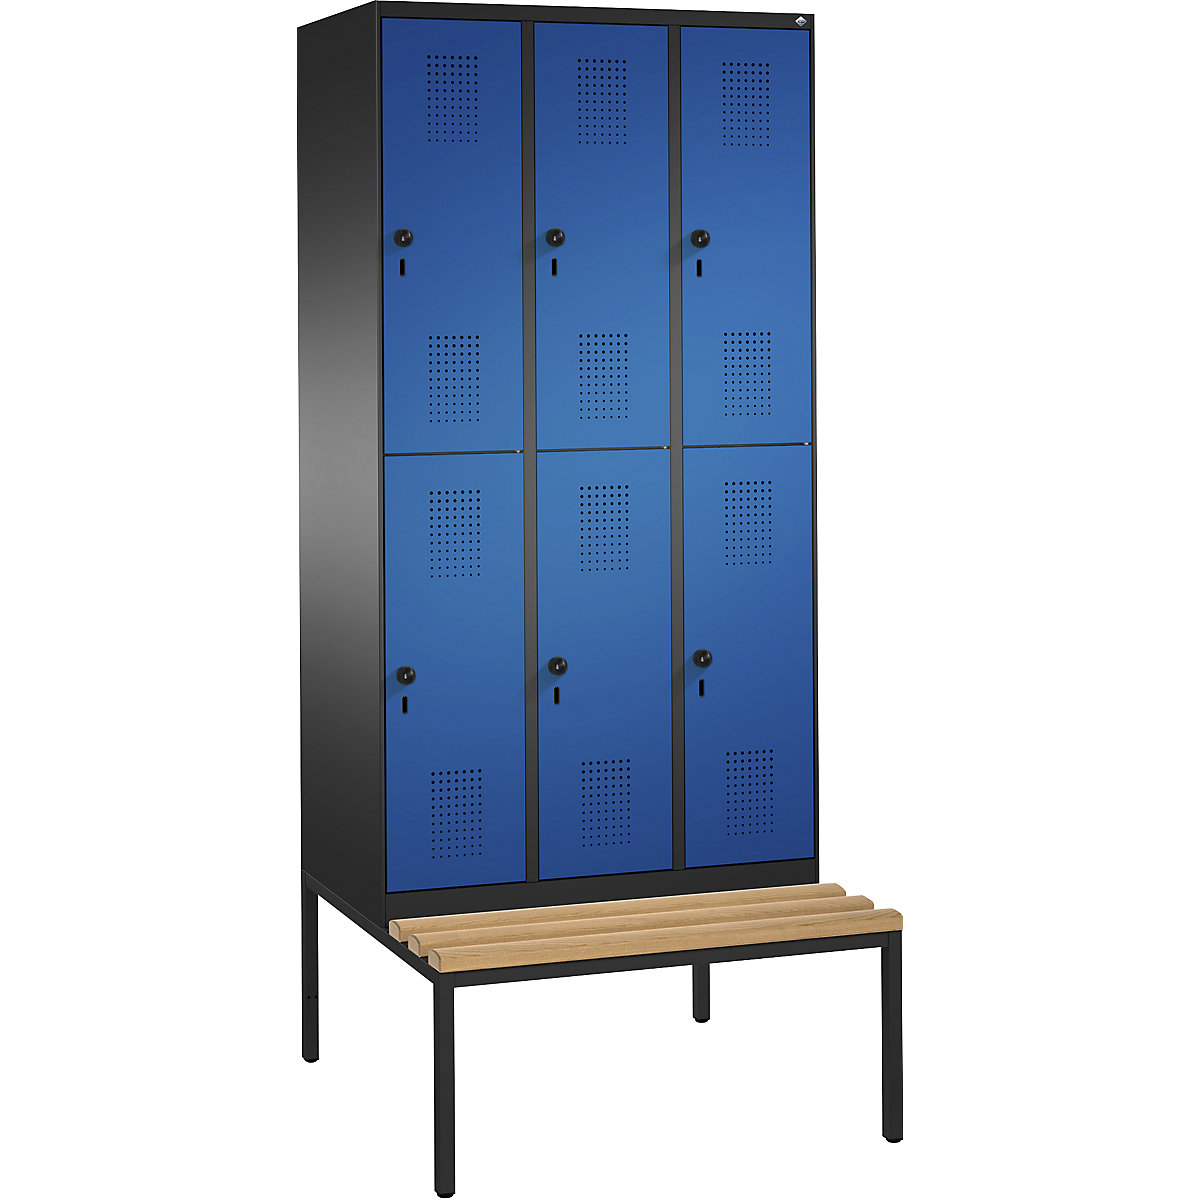 Dvoupatrová šatní skříň s lavicí EVOLO – C+P, 3 oddíly, vždy 2 boxy, šířka oddílu 300 mm, černošedá / enciánová modrá-16